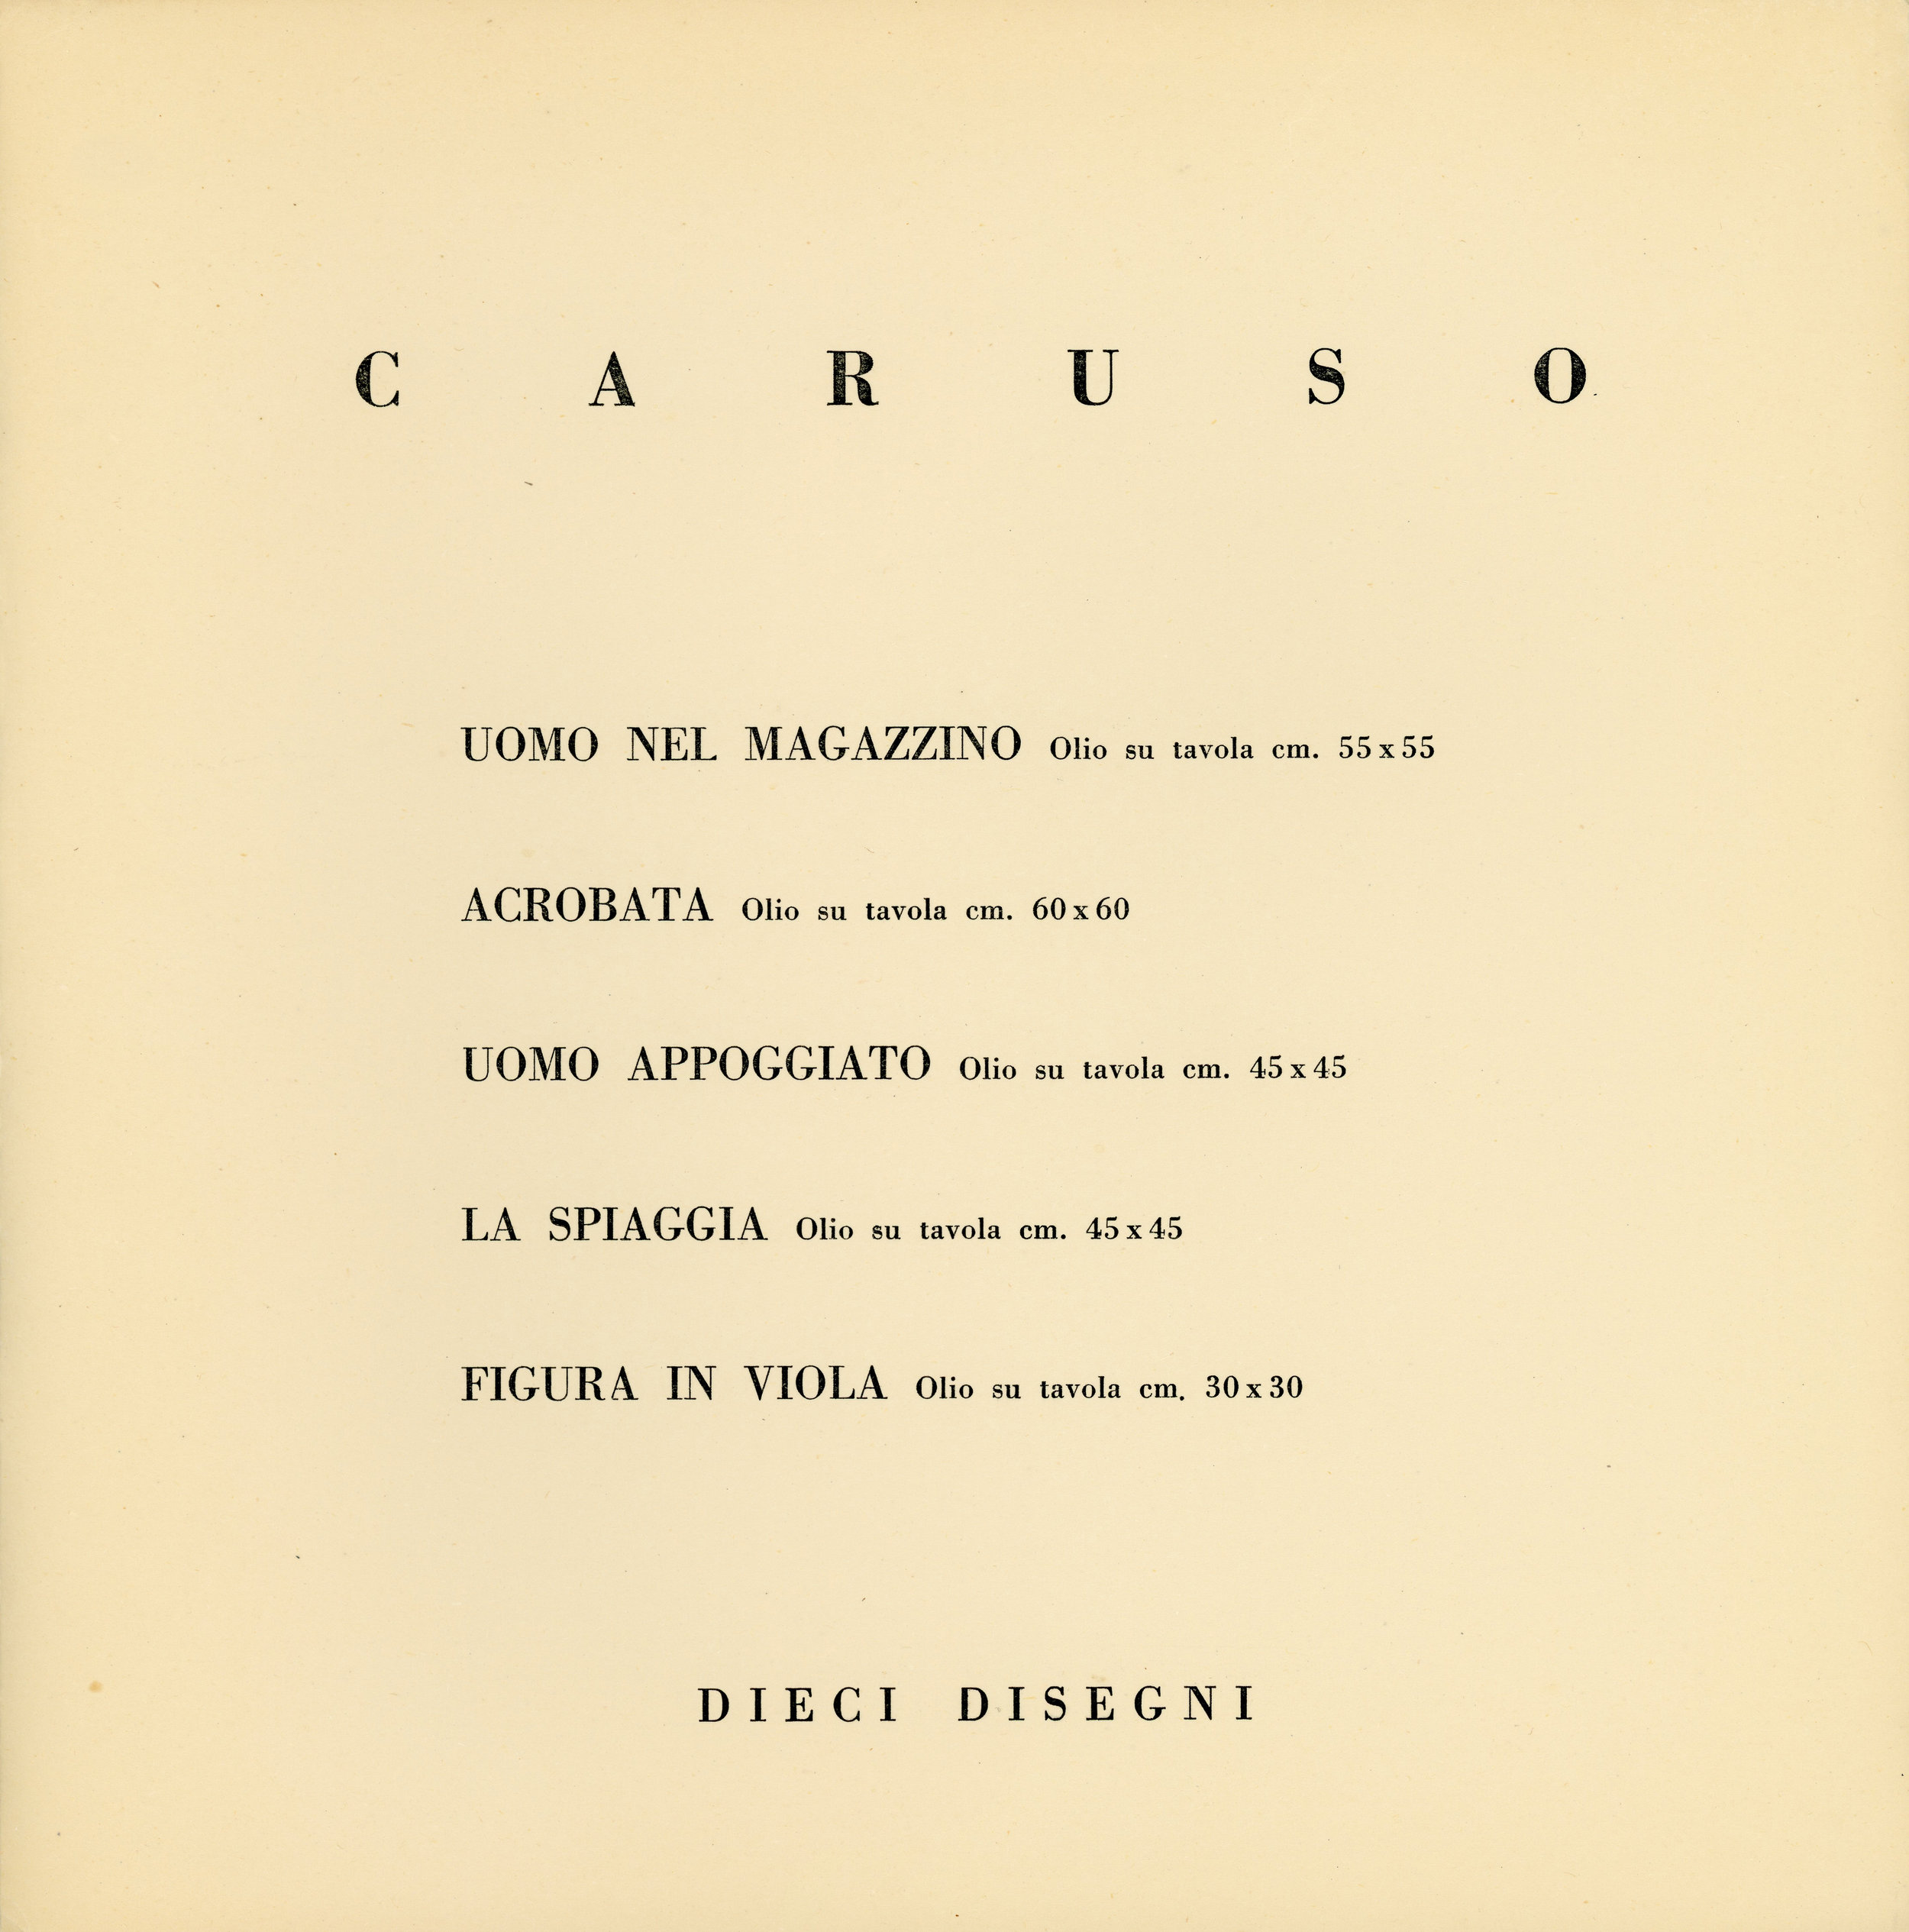 1955-05 Galleria del Sole - Bruno Caruso_03.jpg